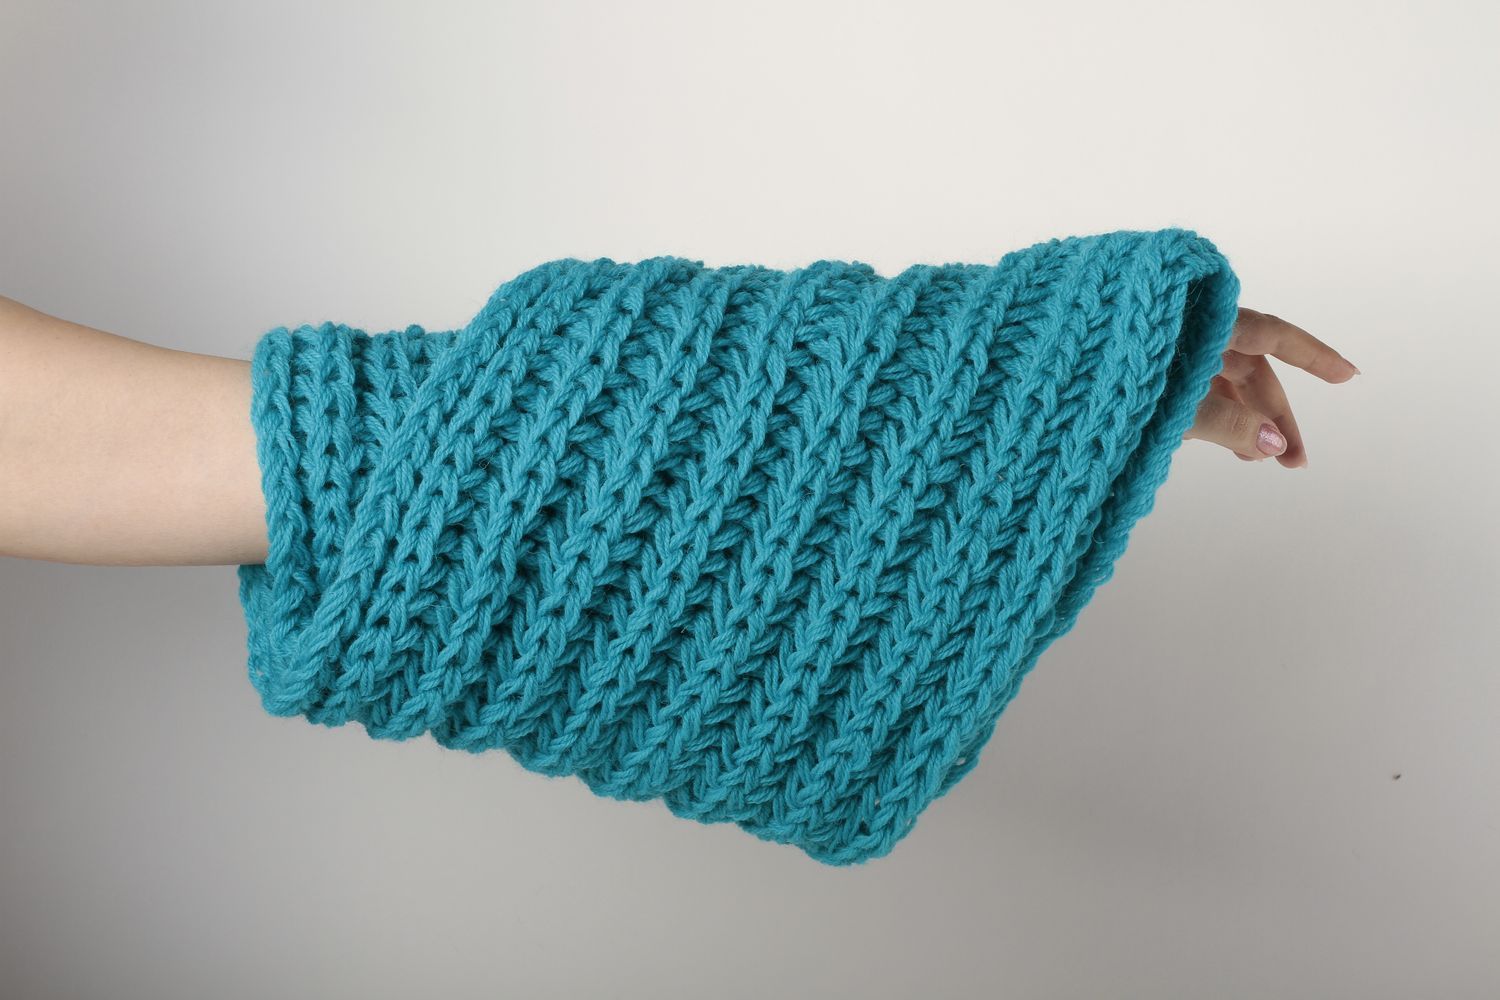 Écharpe bleue faite main Vêtement femme tricotée en laine chaude Idée cadeau photo 1